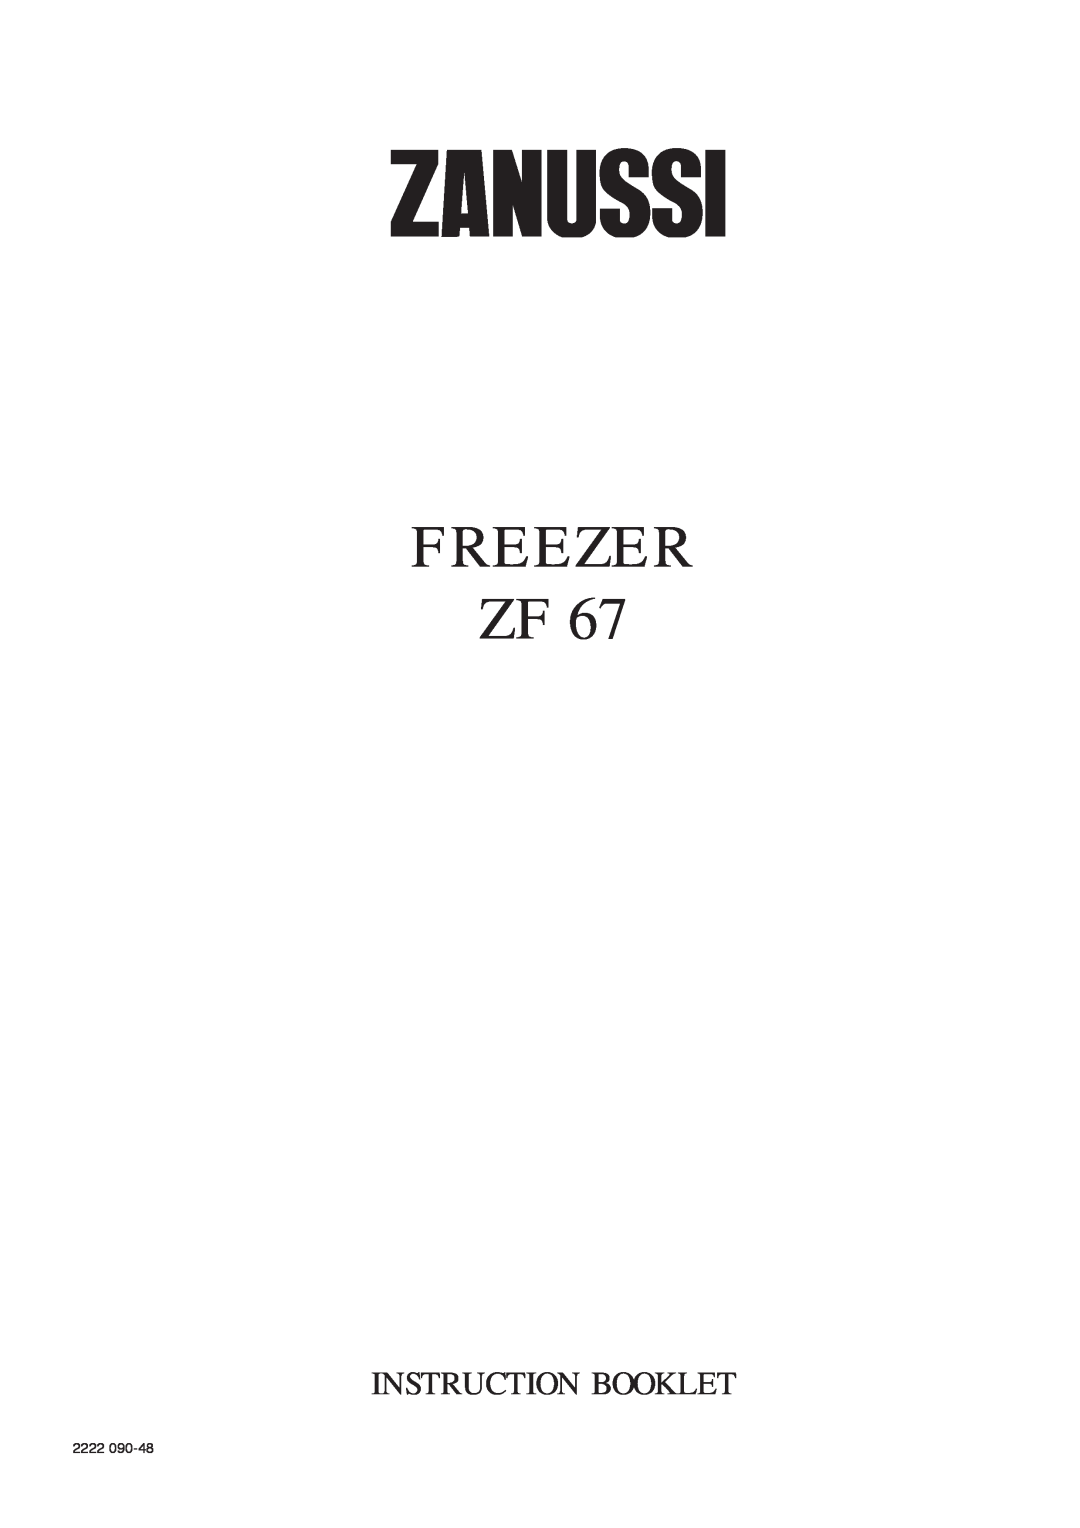 Zanussi ZF 67 manual Freezer Zf, Instruction Booklet, 2222 